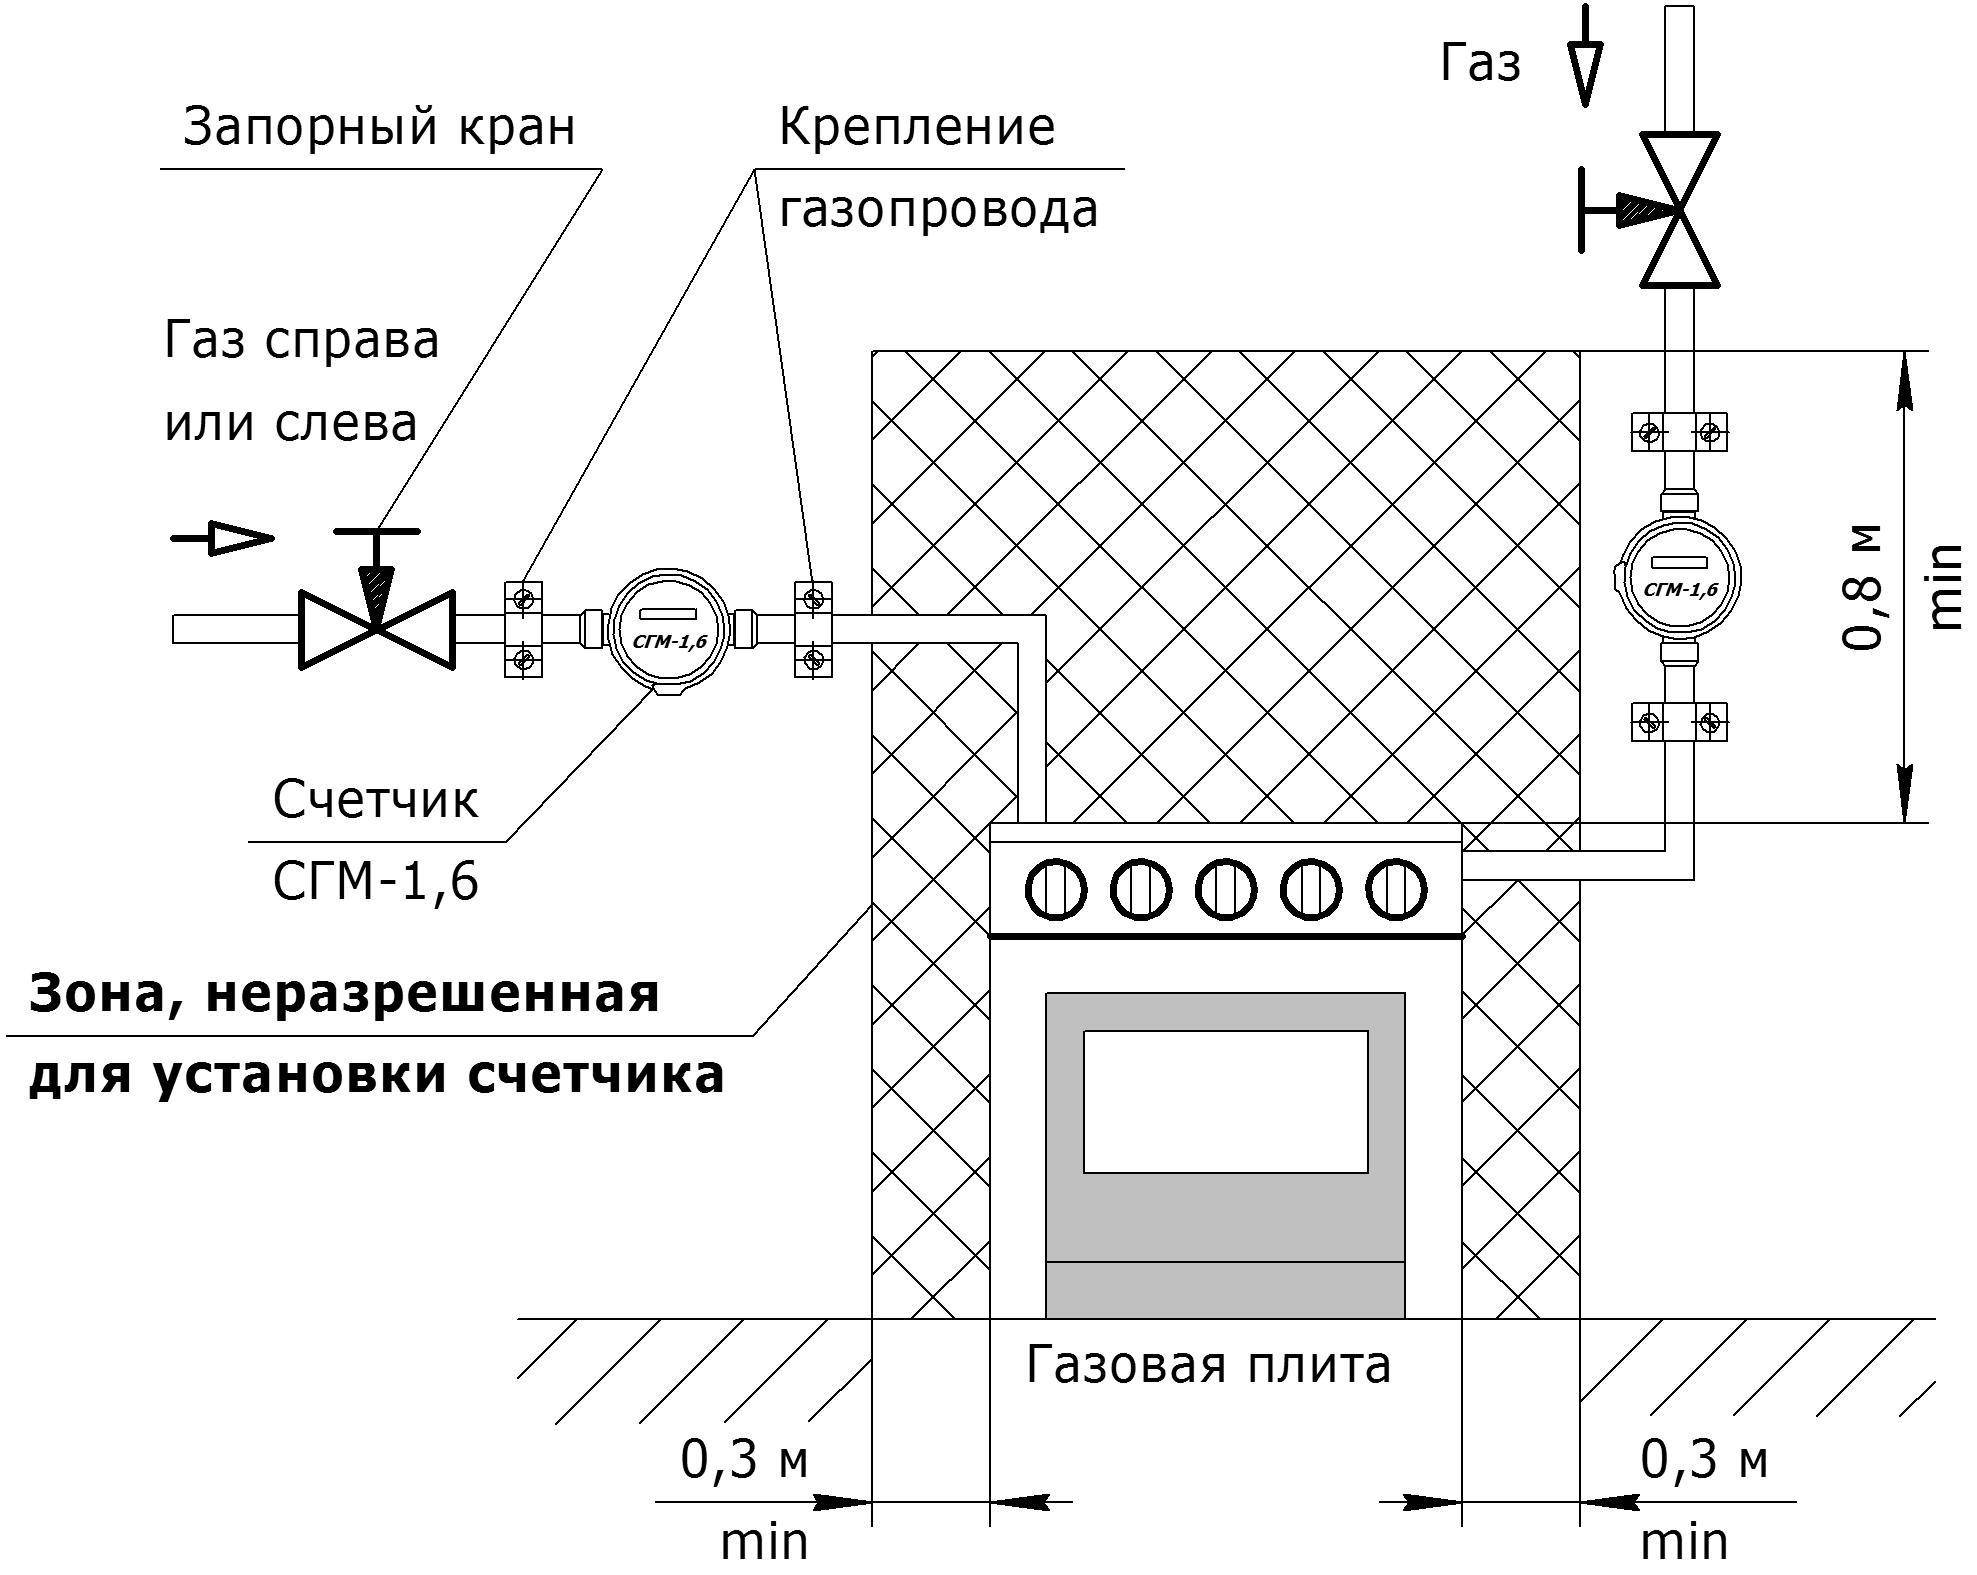 Кто должен подключать газовую плиту в квартире? - дизайн интерьеров, фото журнал remontgood.ru